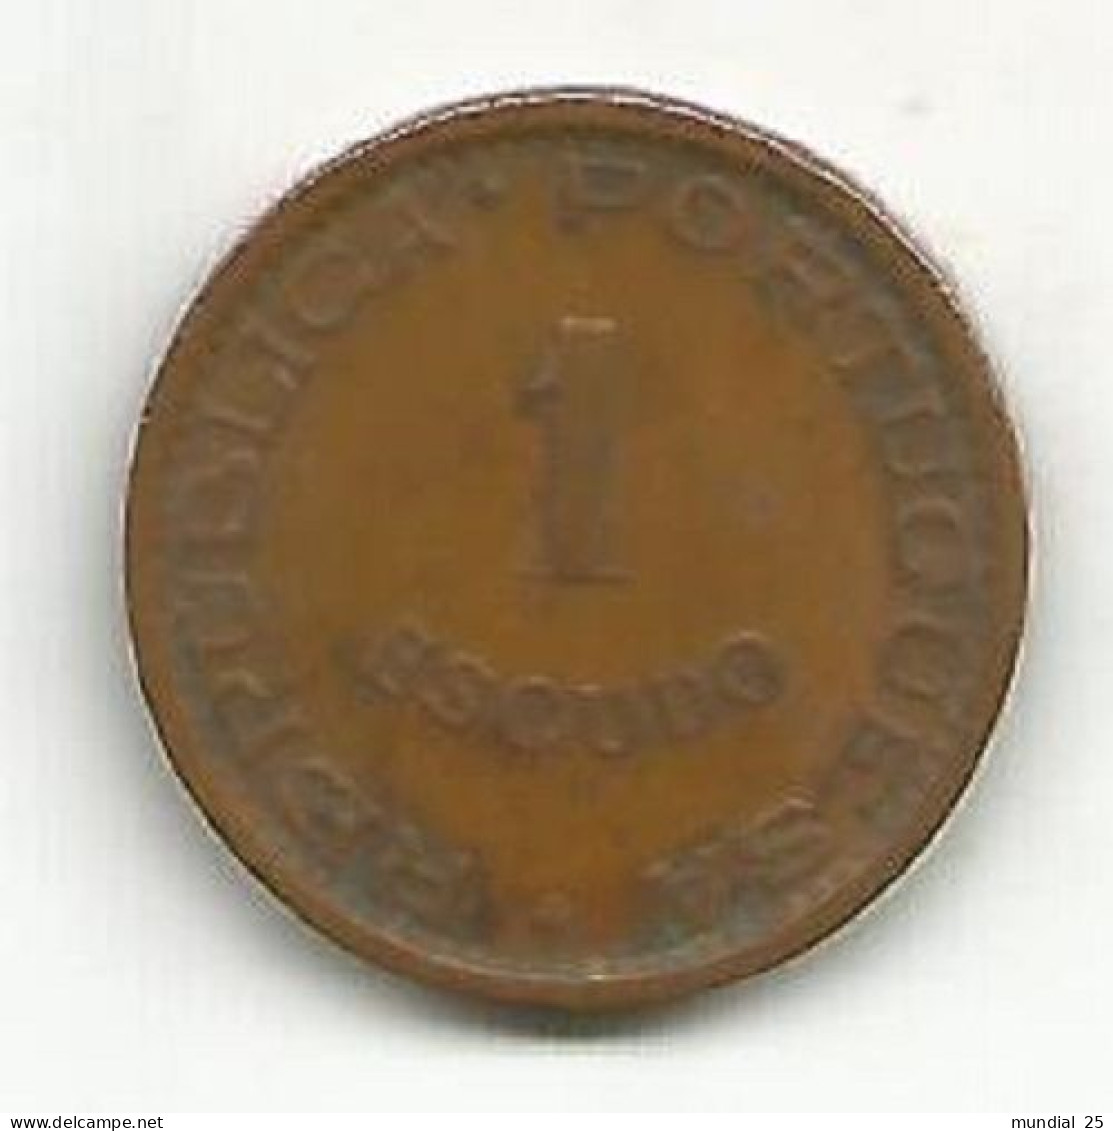 SAO TOME AND PRINCIPE PORTUGAL 1$00 ESCUDO 1962 - Sao Tome And Principe